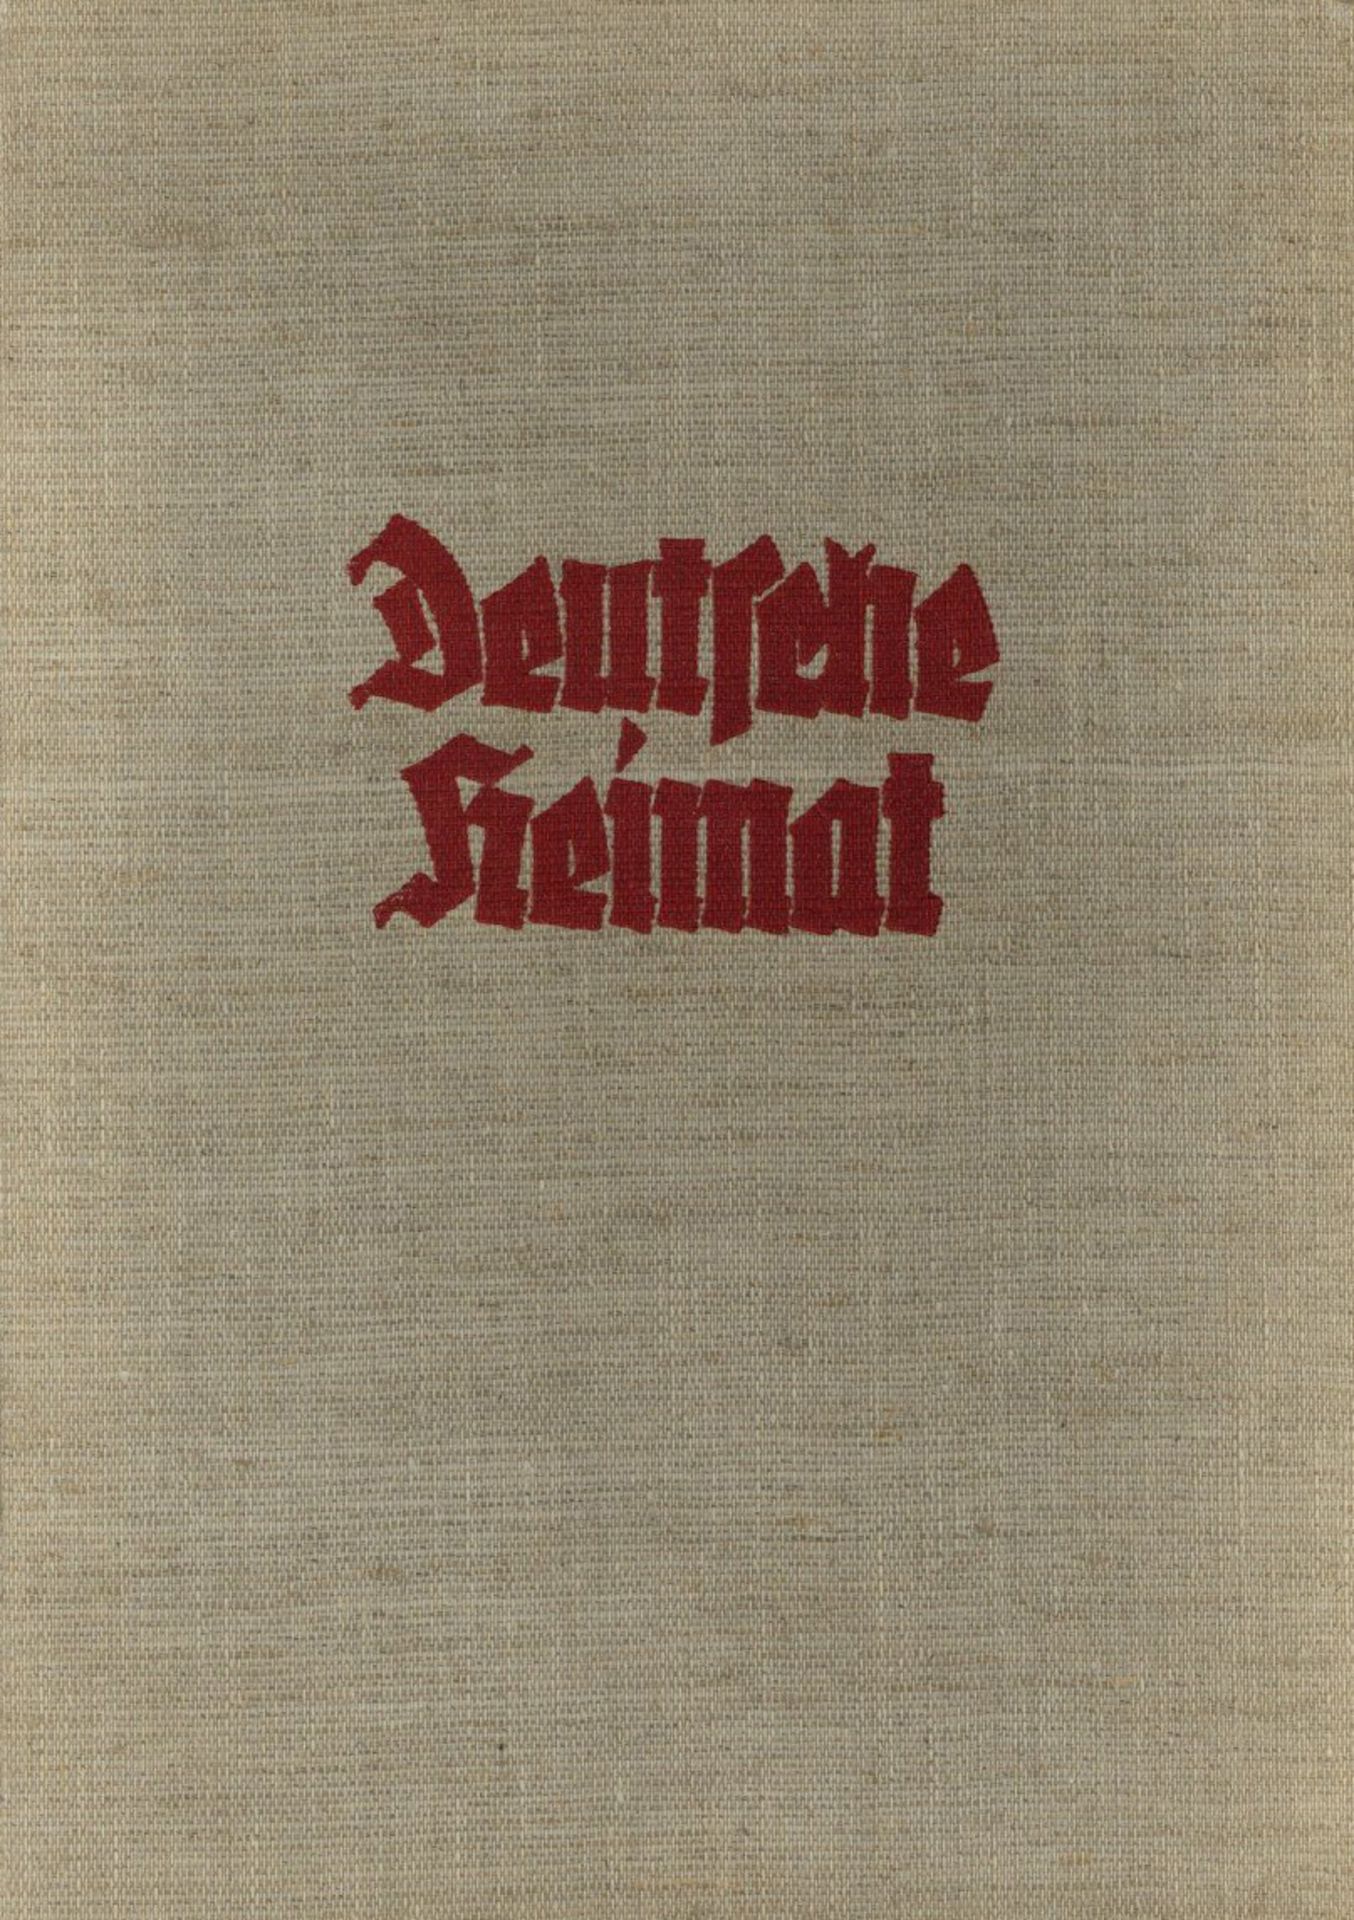 Sammelbild-Album Deutsche Heimat, Zigarettenfabrik Yramos Dresden 1937, komplett auf 65 S. II